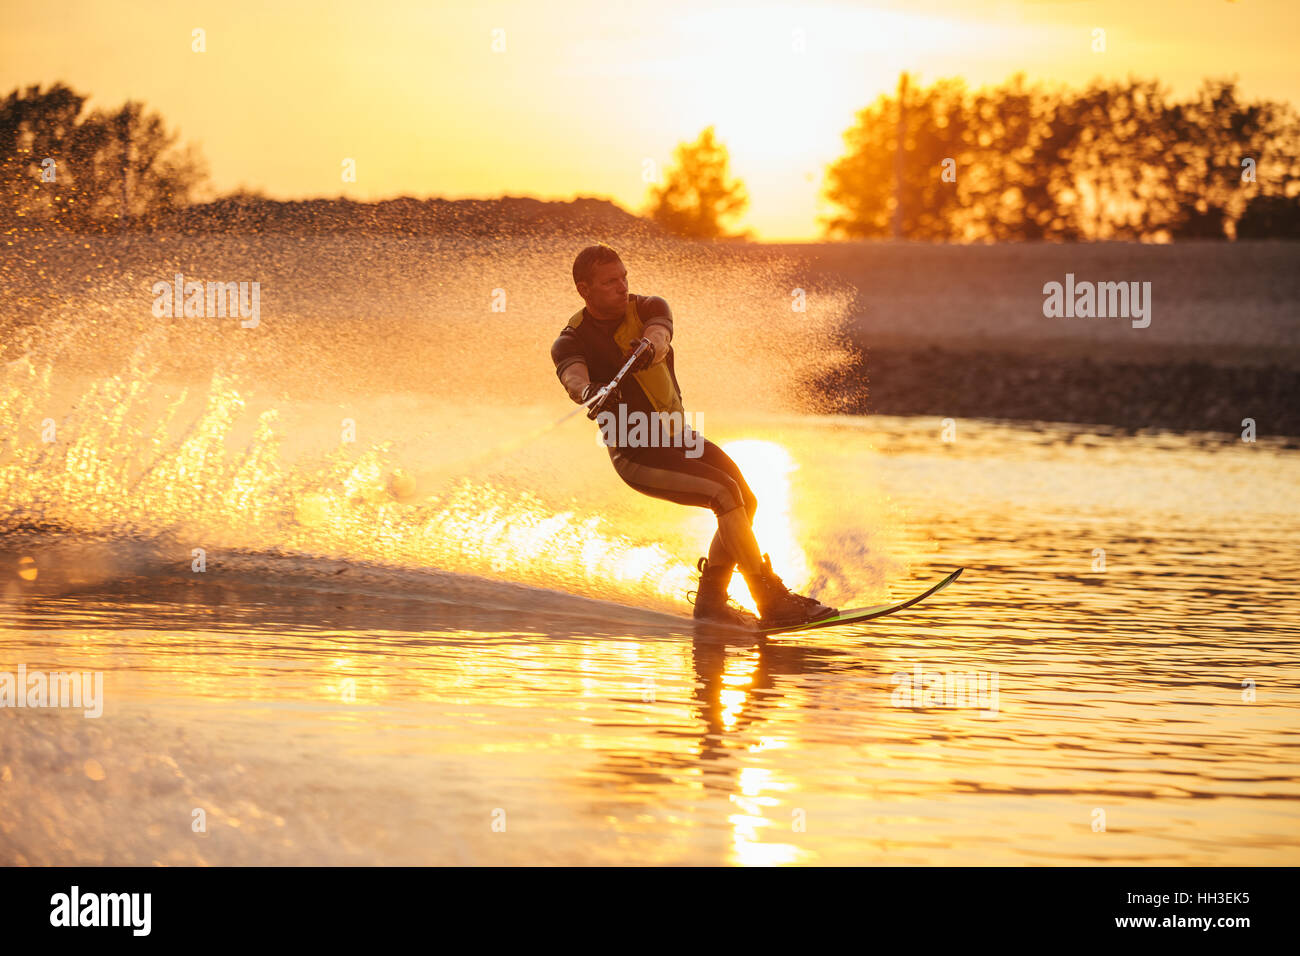 Im Freien Schuss des Mannes Wasserski bei Sonnenuntergang. Mann Wakeboarden an einem See. Stockfoto